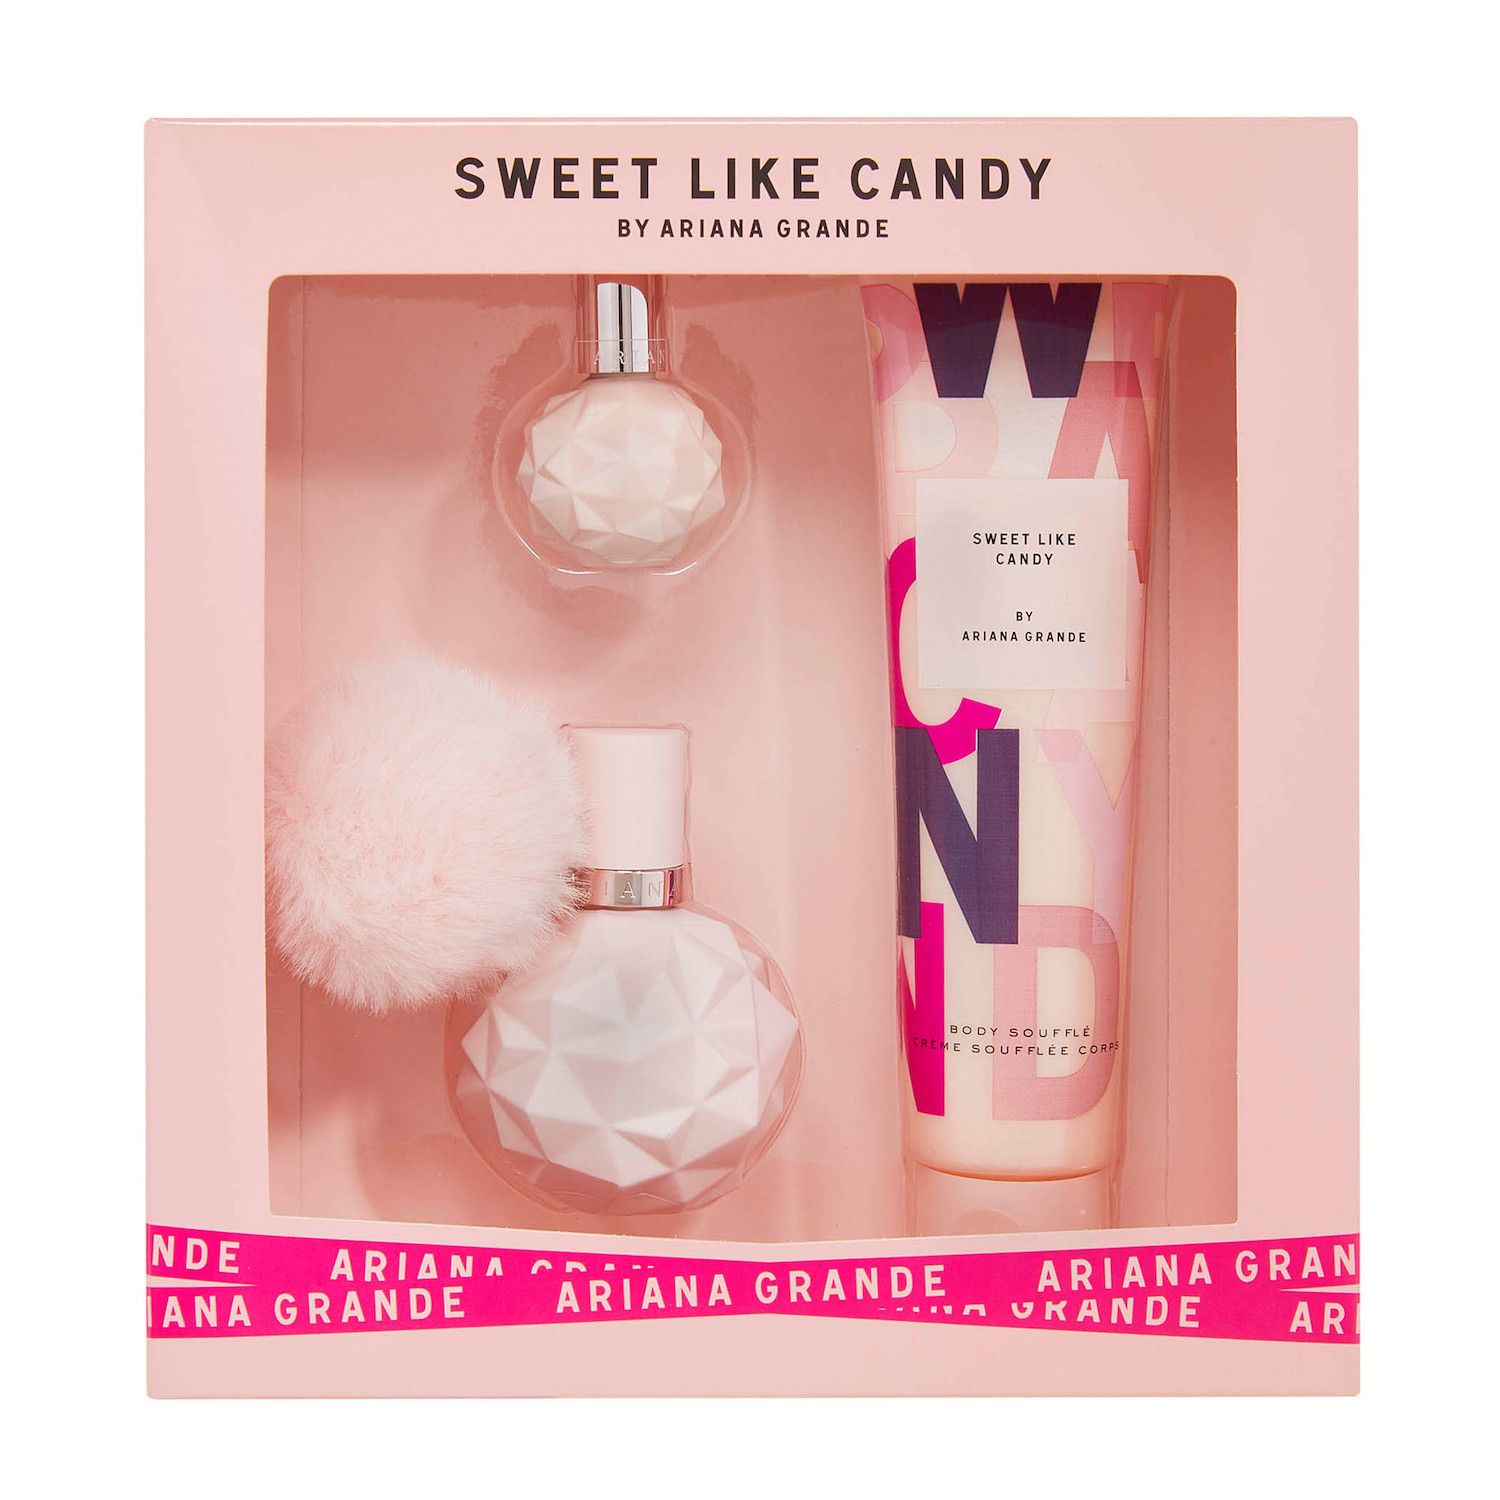 ari sweet like candy perfume